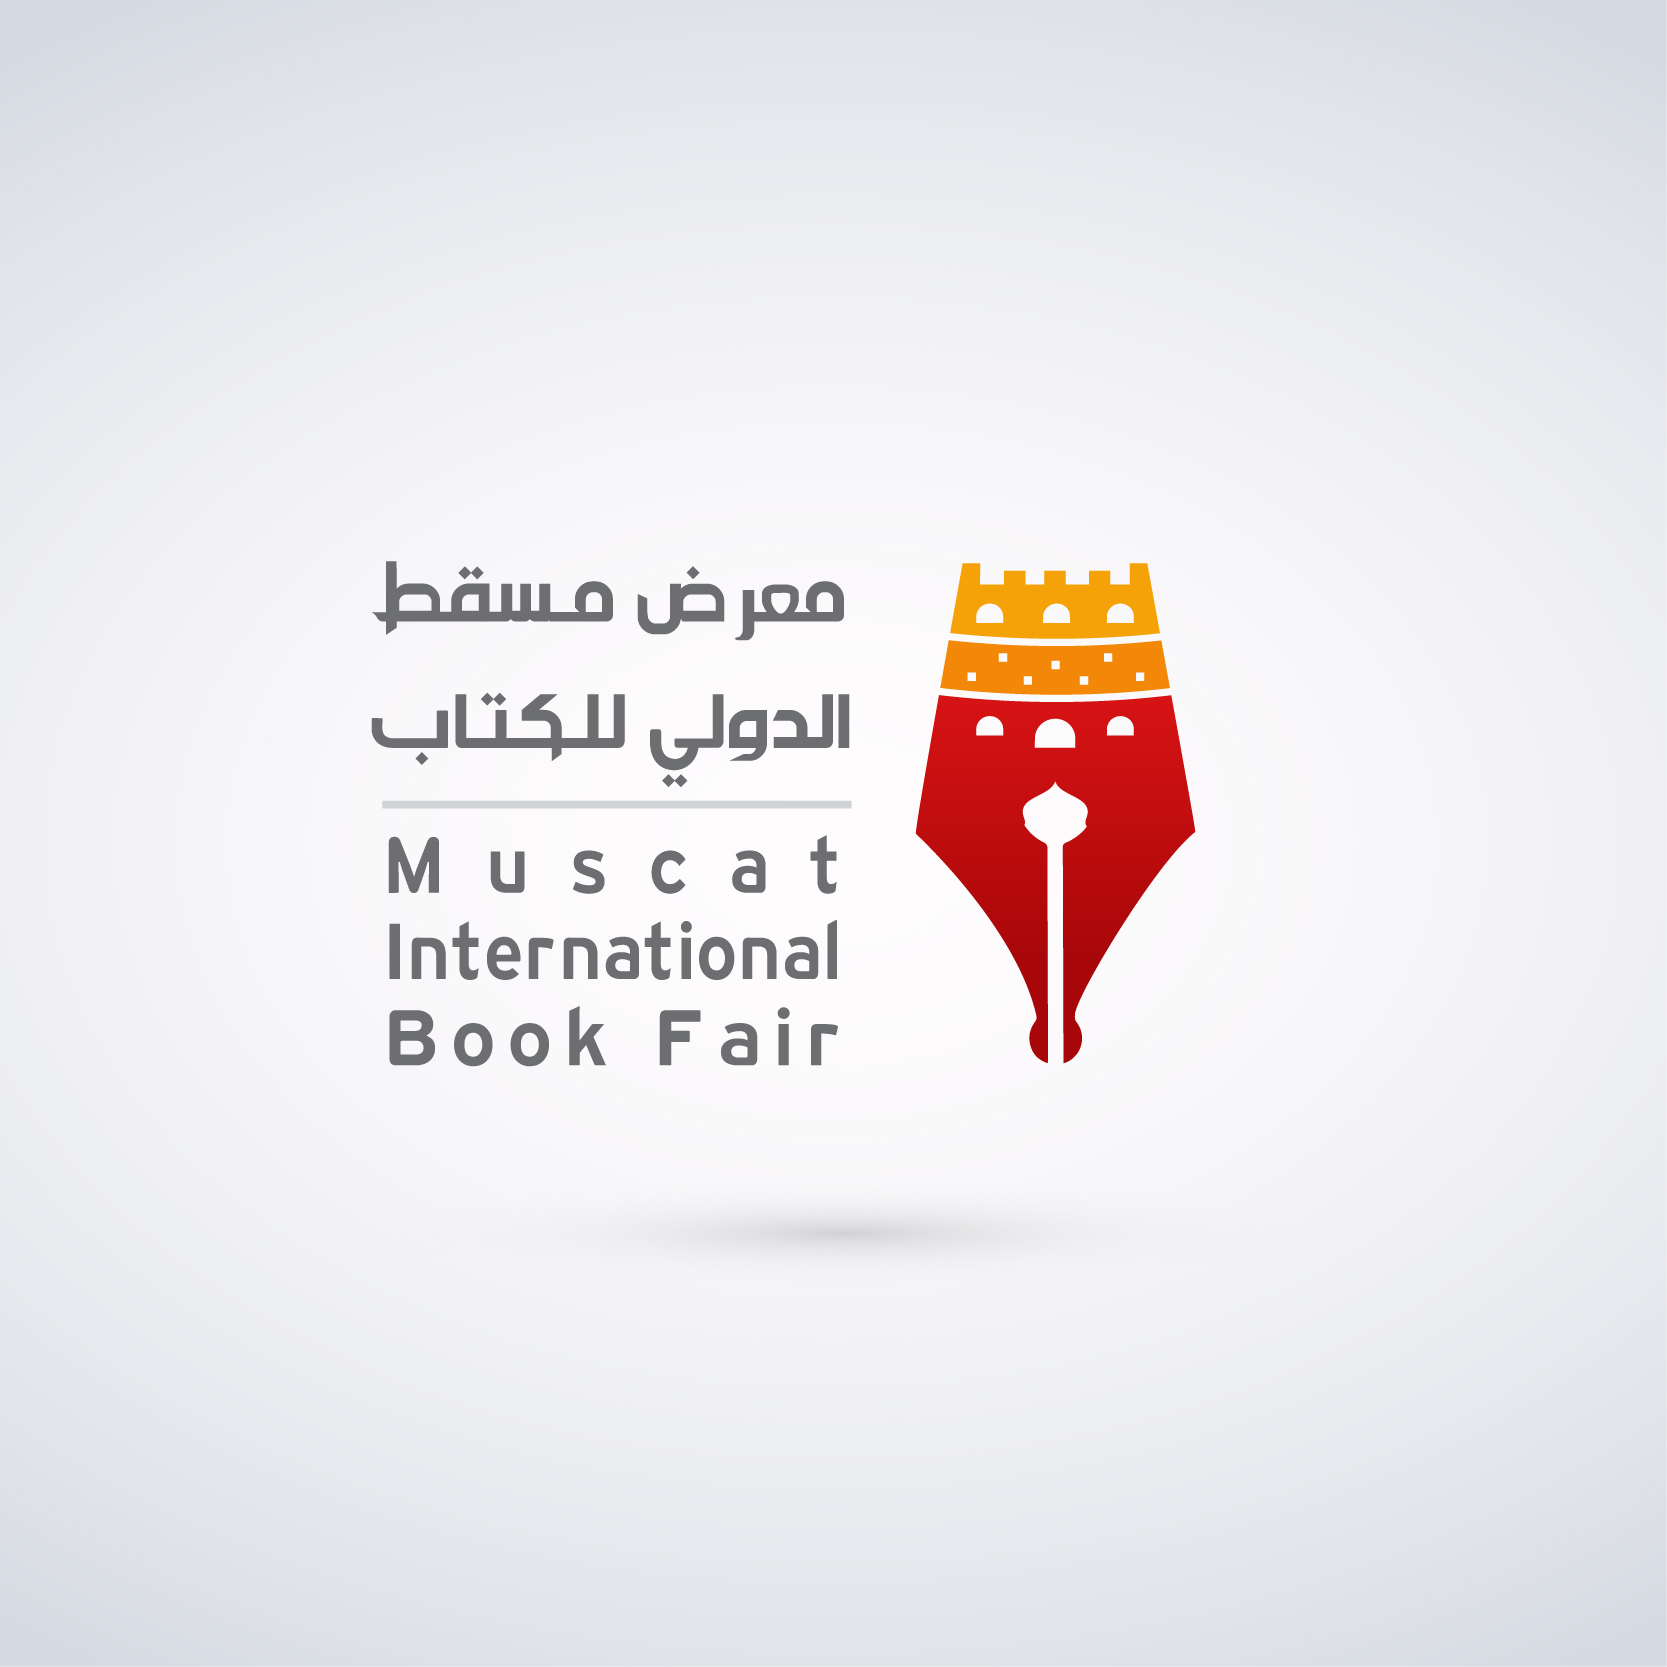 Muscat International Book Fair logo